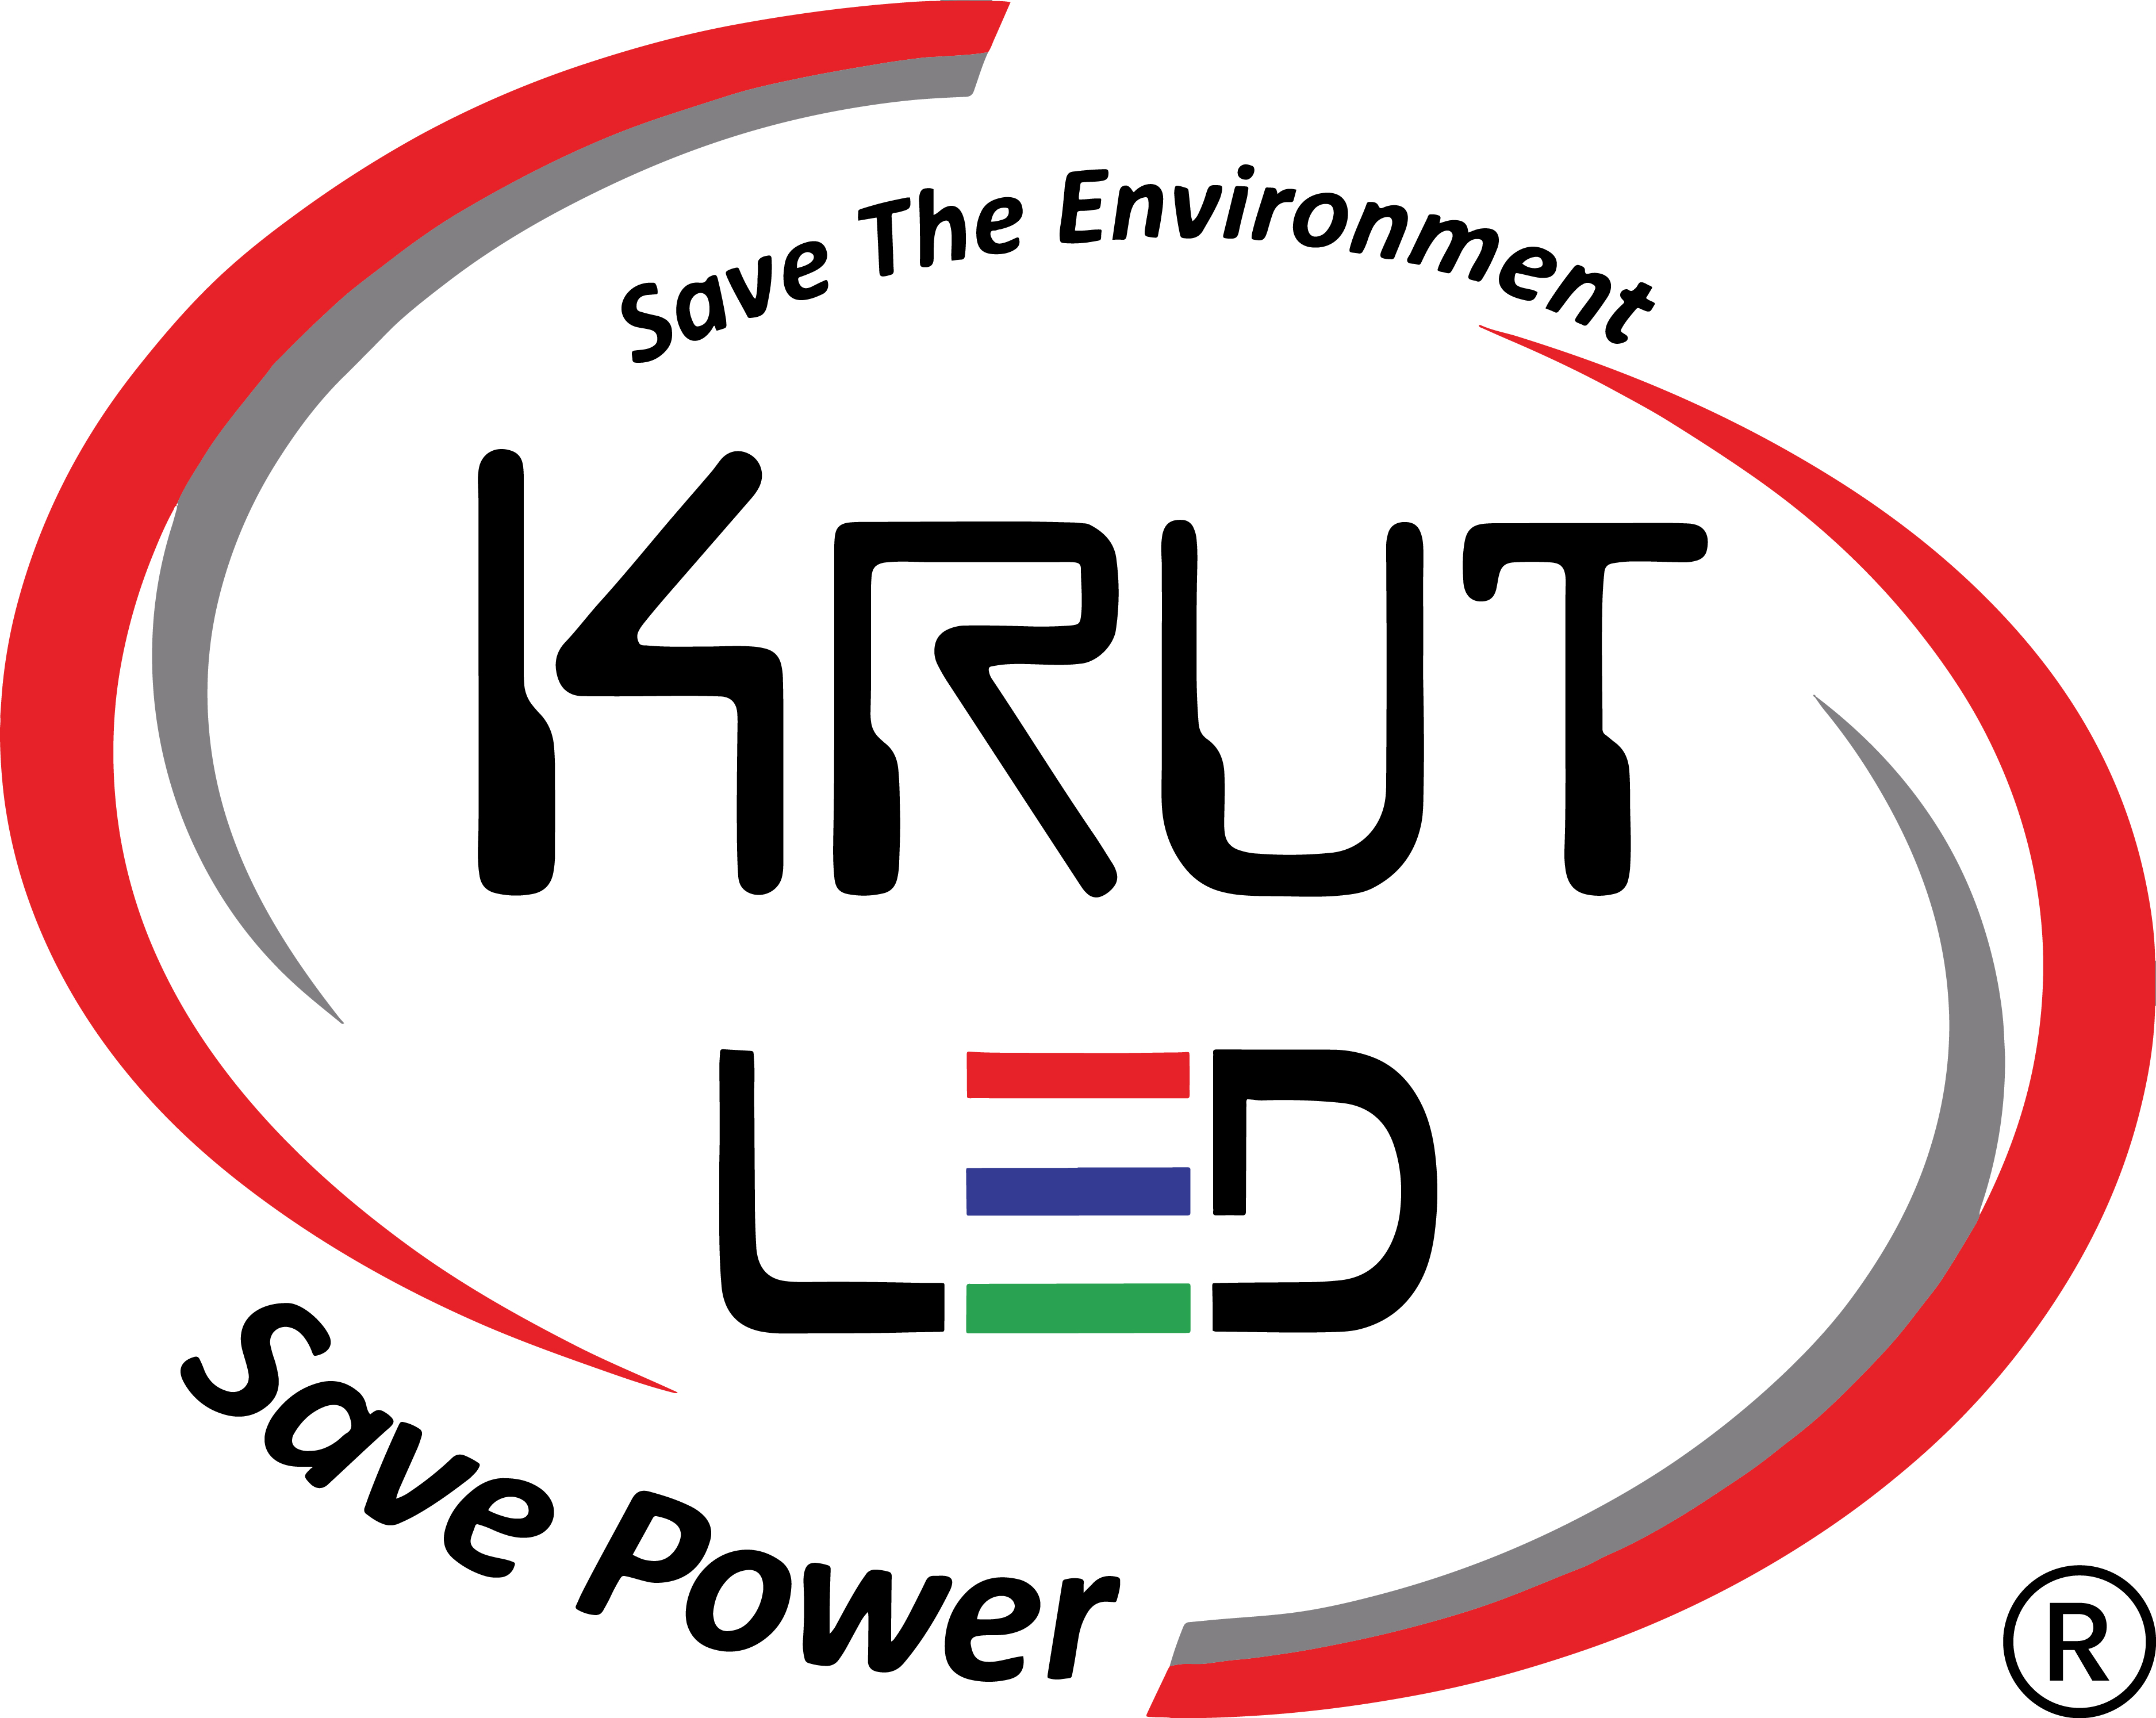 Krut LED Light PVT LTD